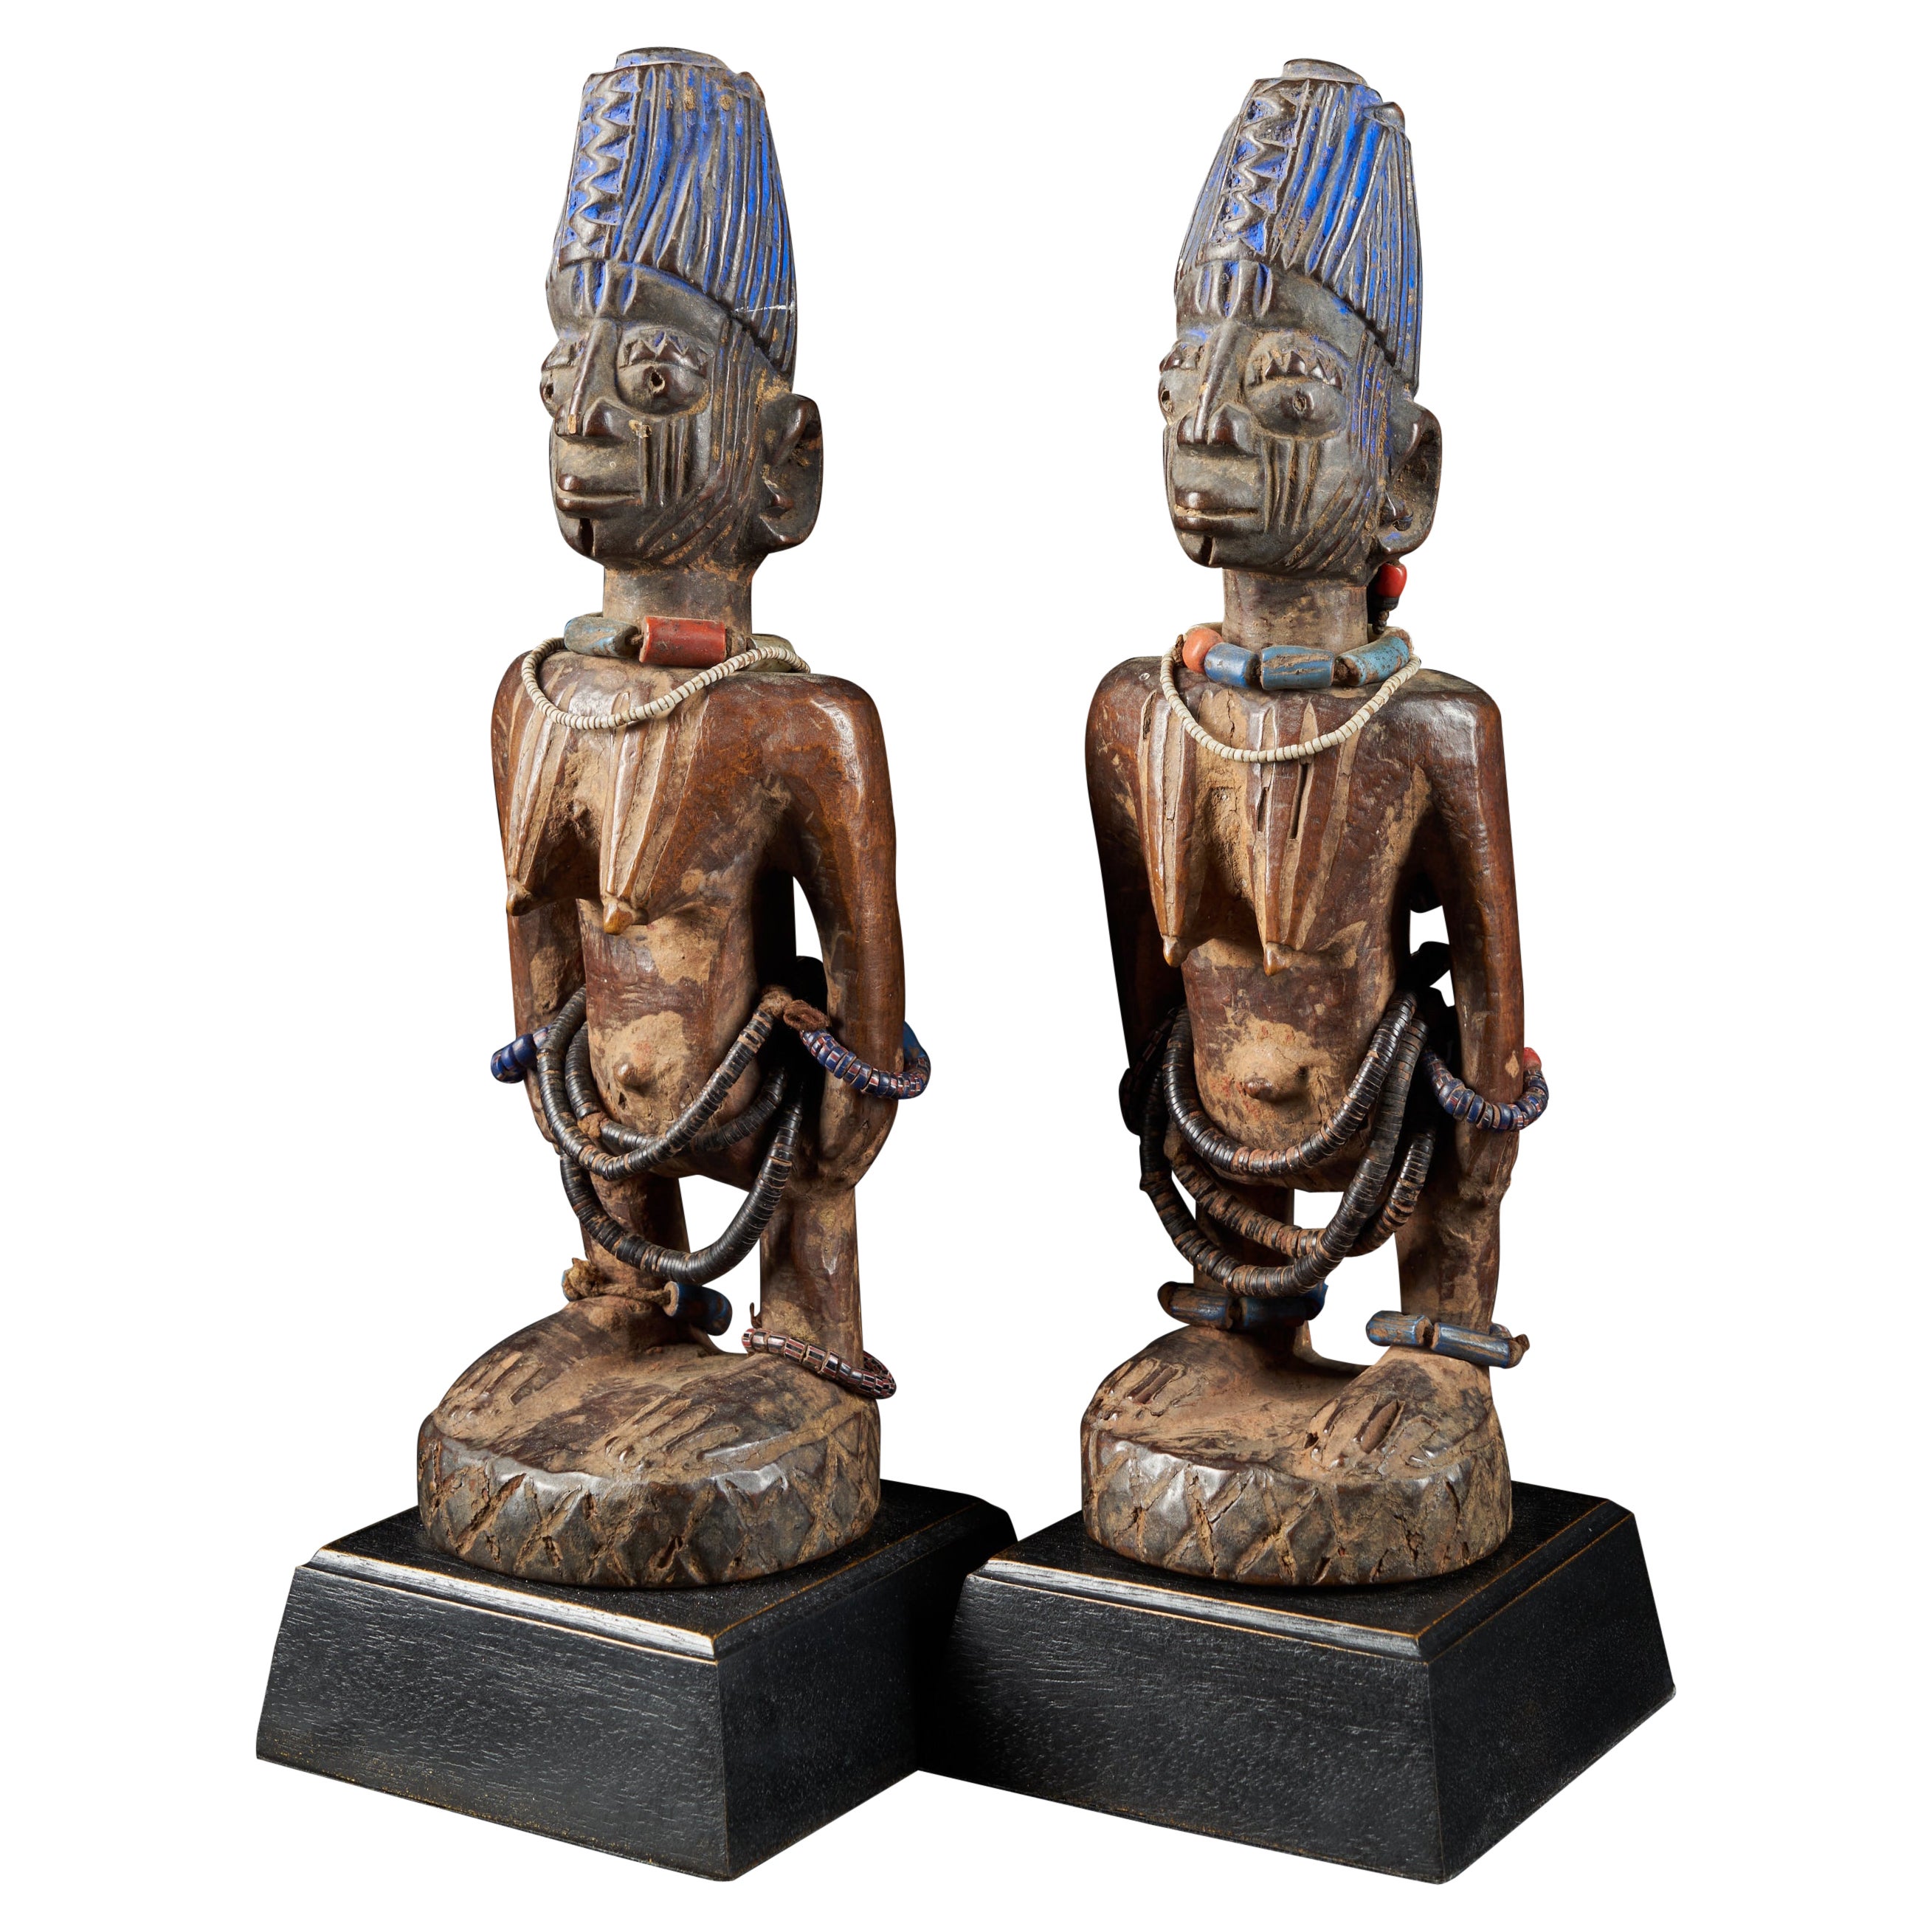 Pair of Decorative Figures ScuIptures Ibeji Twin Figures, Yoruba people Nigeria